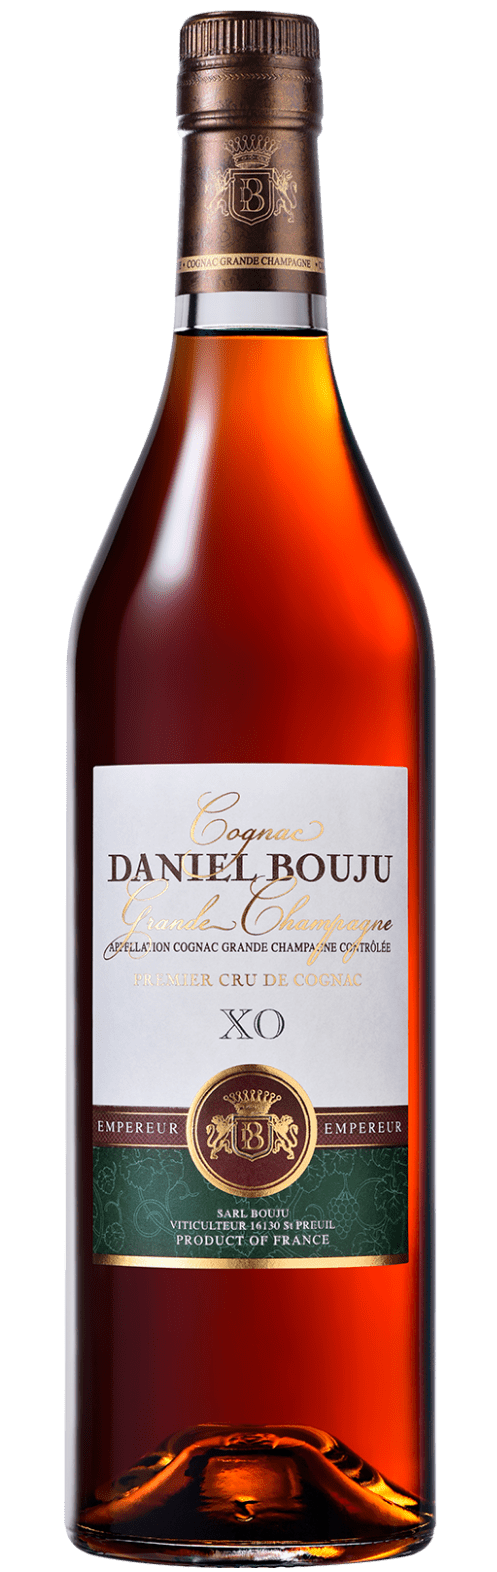 Daniel Bouju Tres Vieux Cognac Brut de Fut Premier Cru Grande Champagne Cognac 70CL